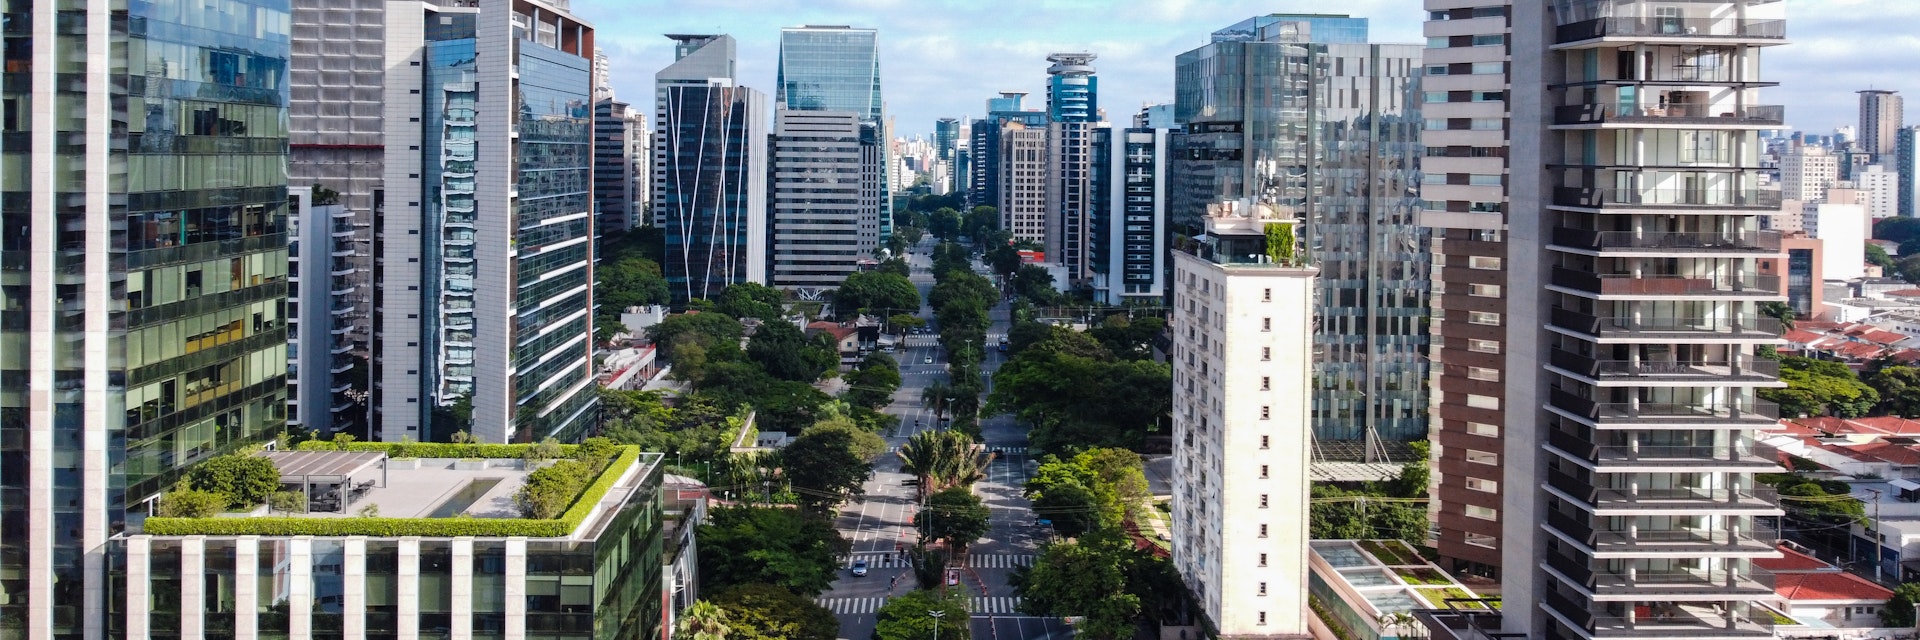 Avenue Faria Lima in Sao Paulo